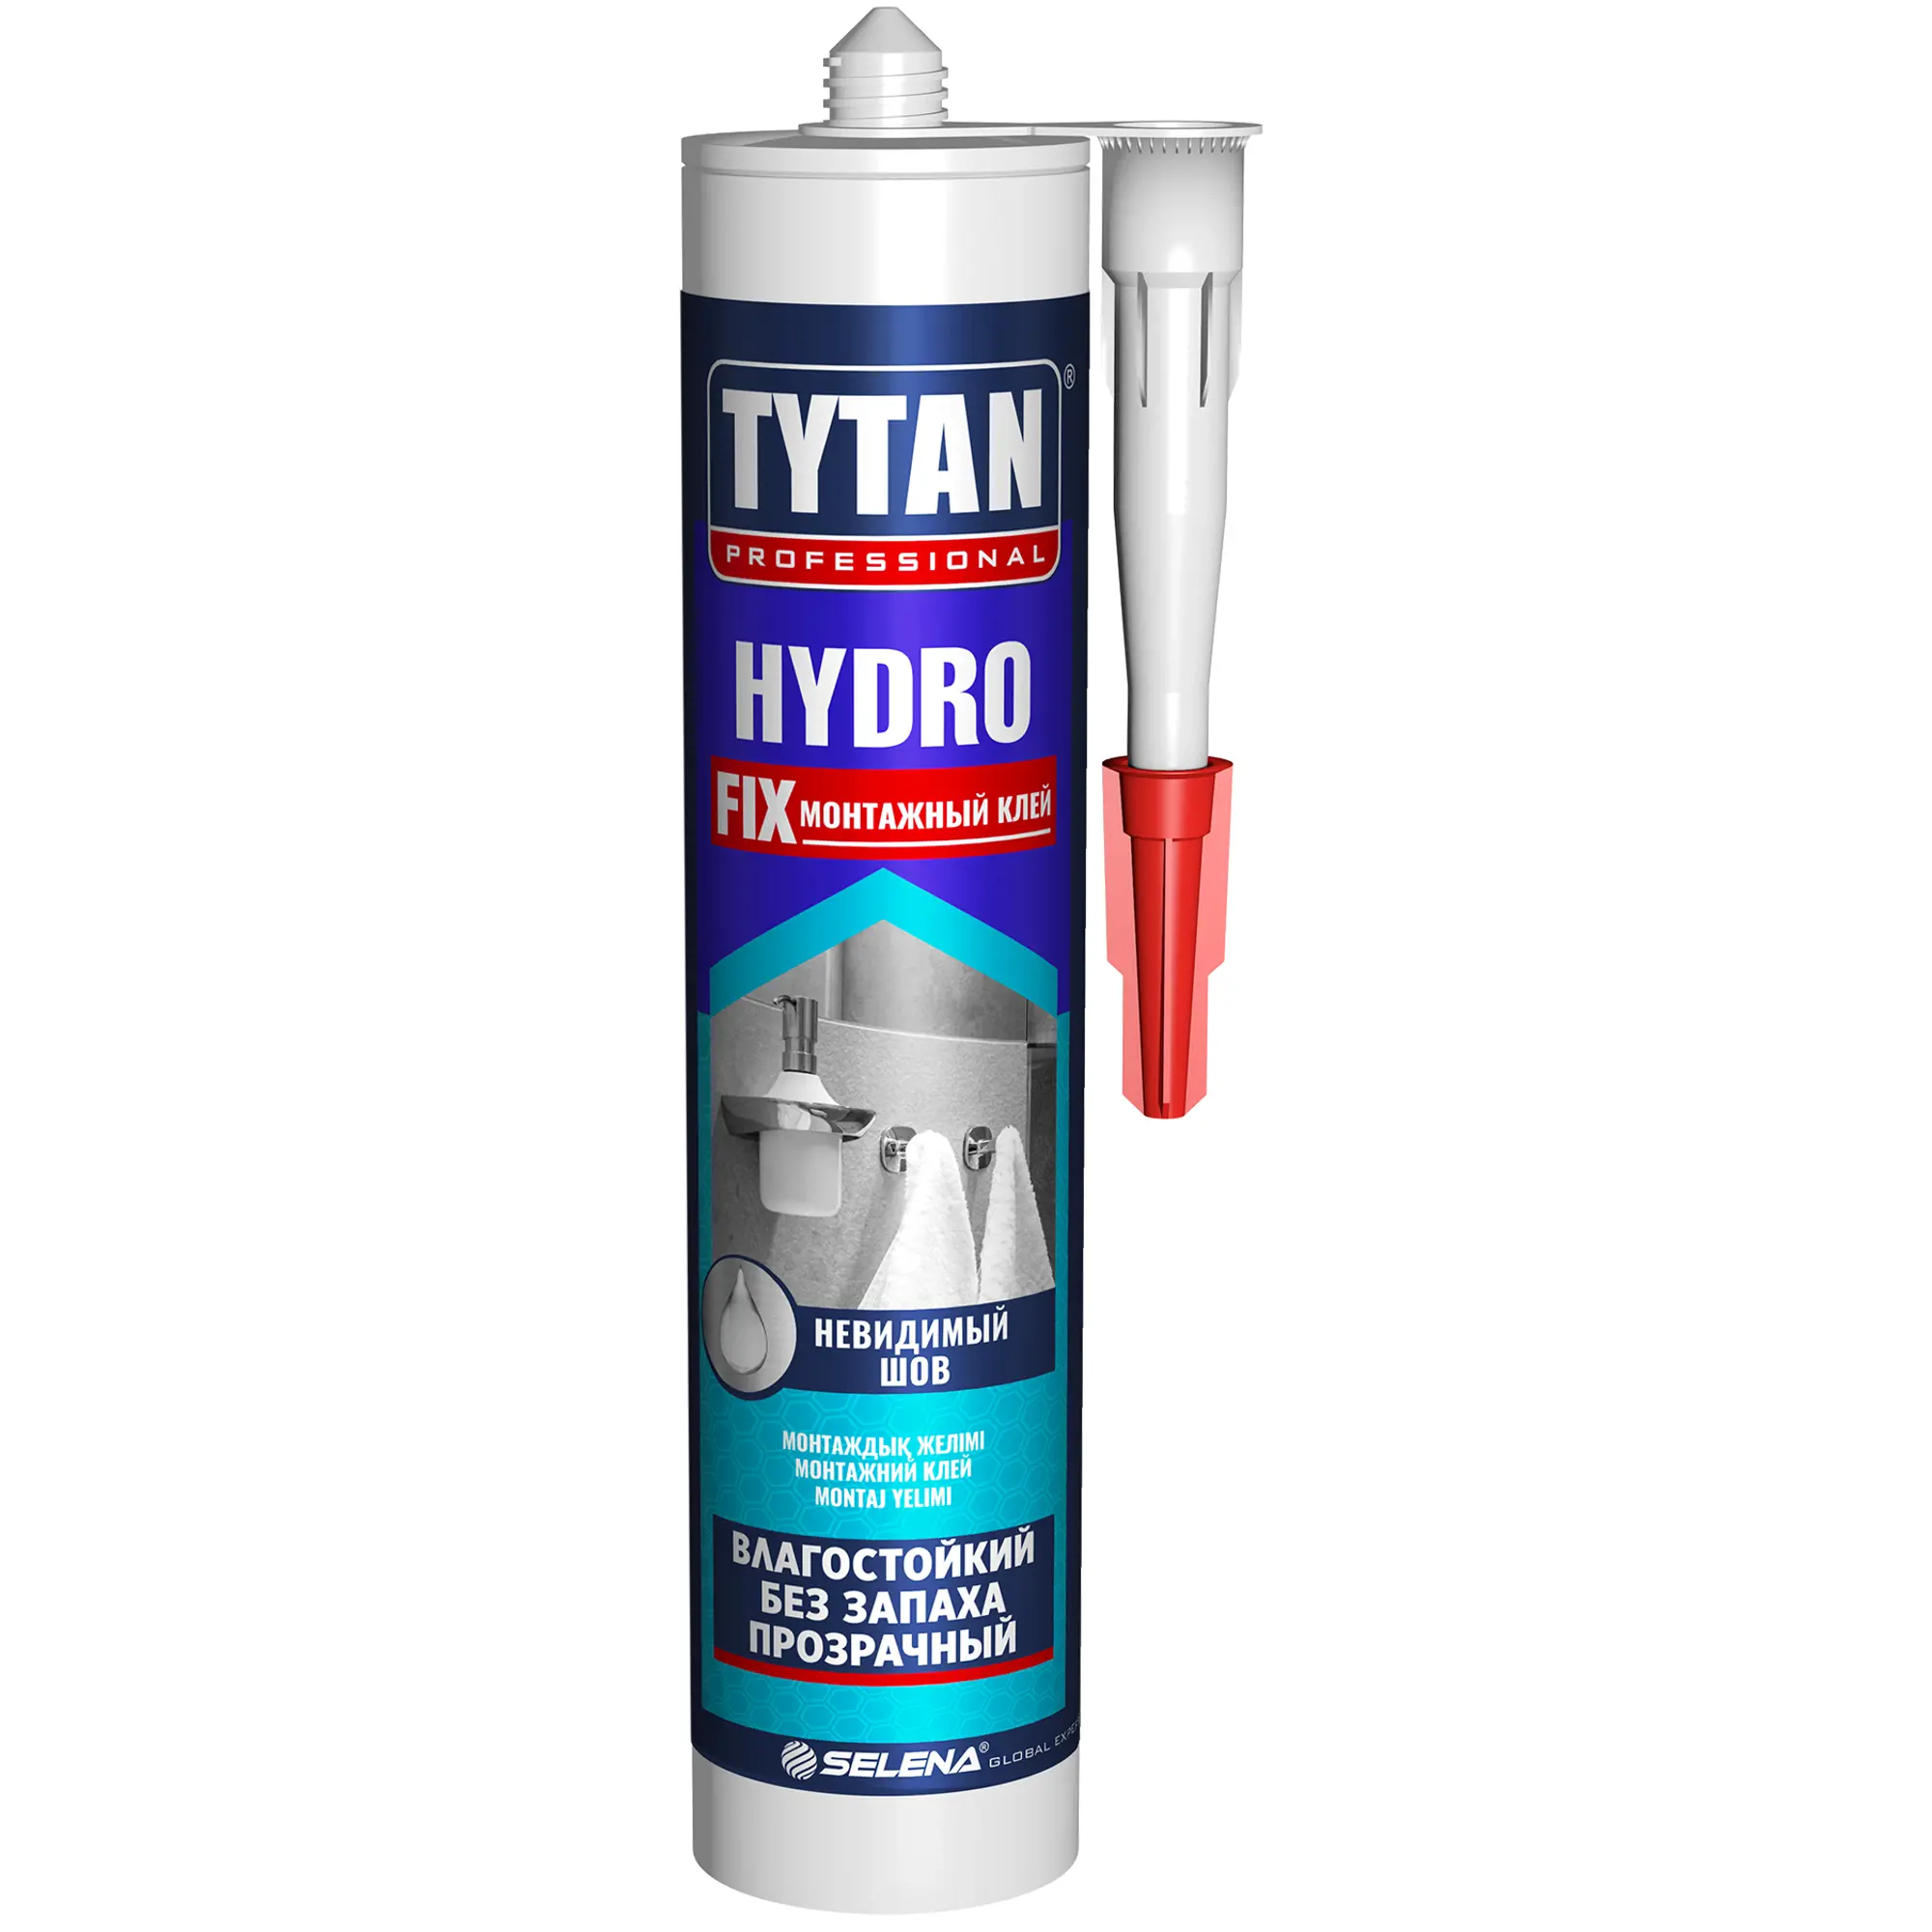 Клей tytan fix прозрачный. Клей монтажный Tytan professional Hydro Fix, 310 мл. Tytan professional Hydro Fix. Клей монтажный акриловый Tytan Hydro Fix прозрачный 310 мл. Монтажный клей Tytan professional Classic Fix 310 мл.